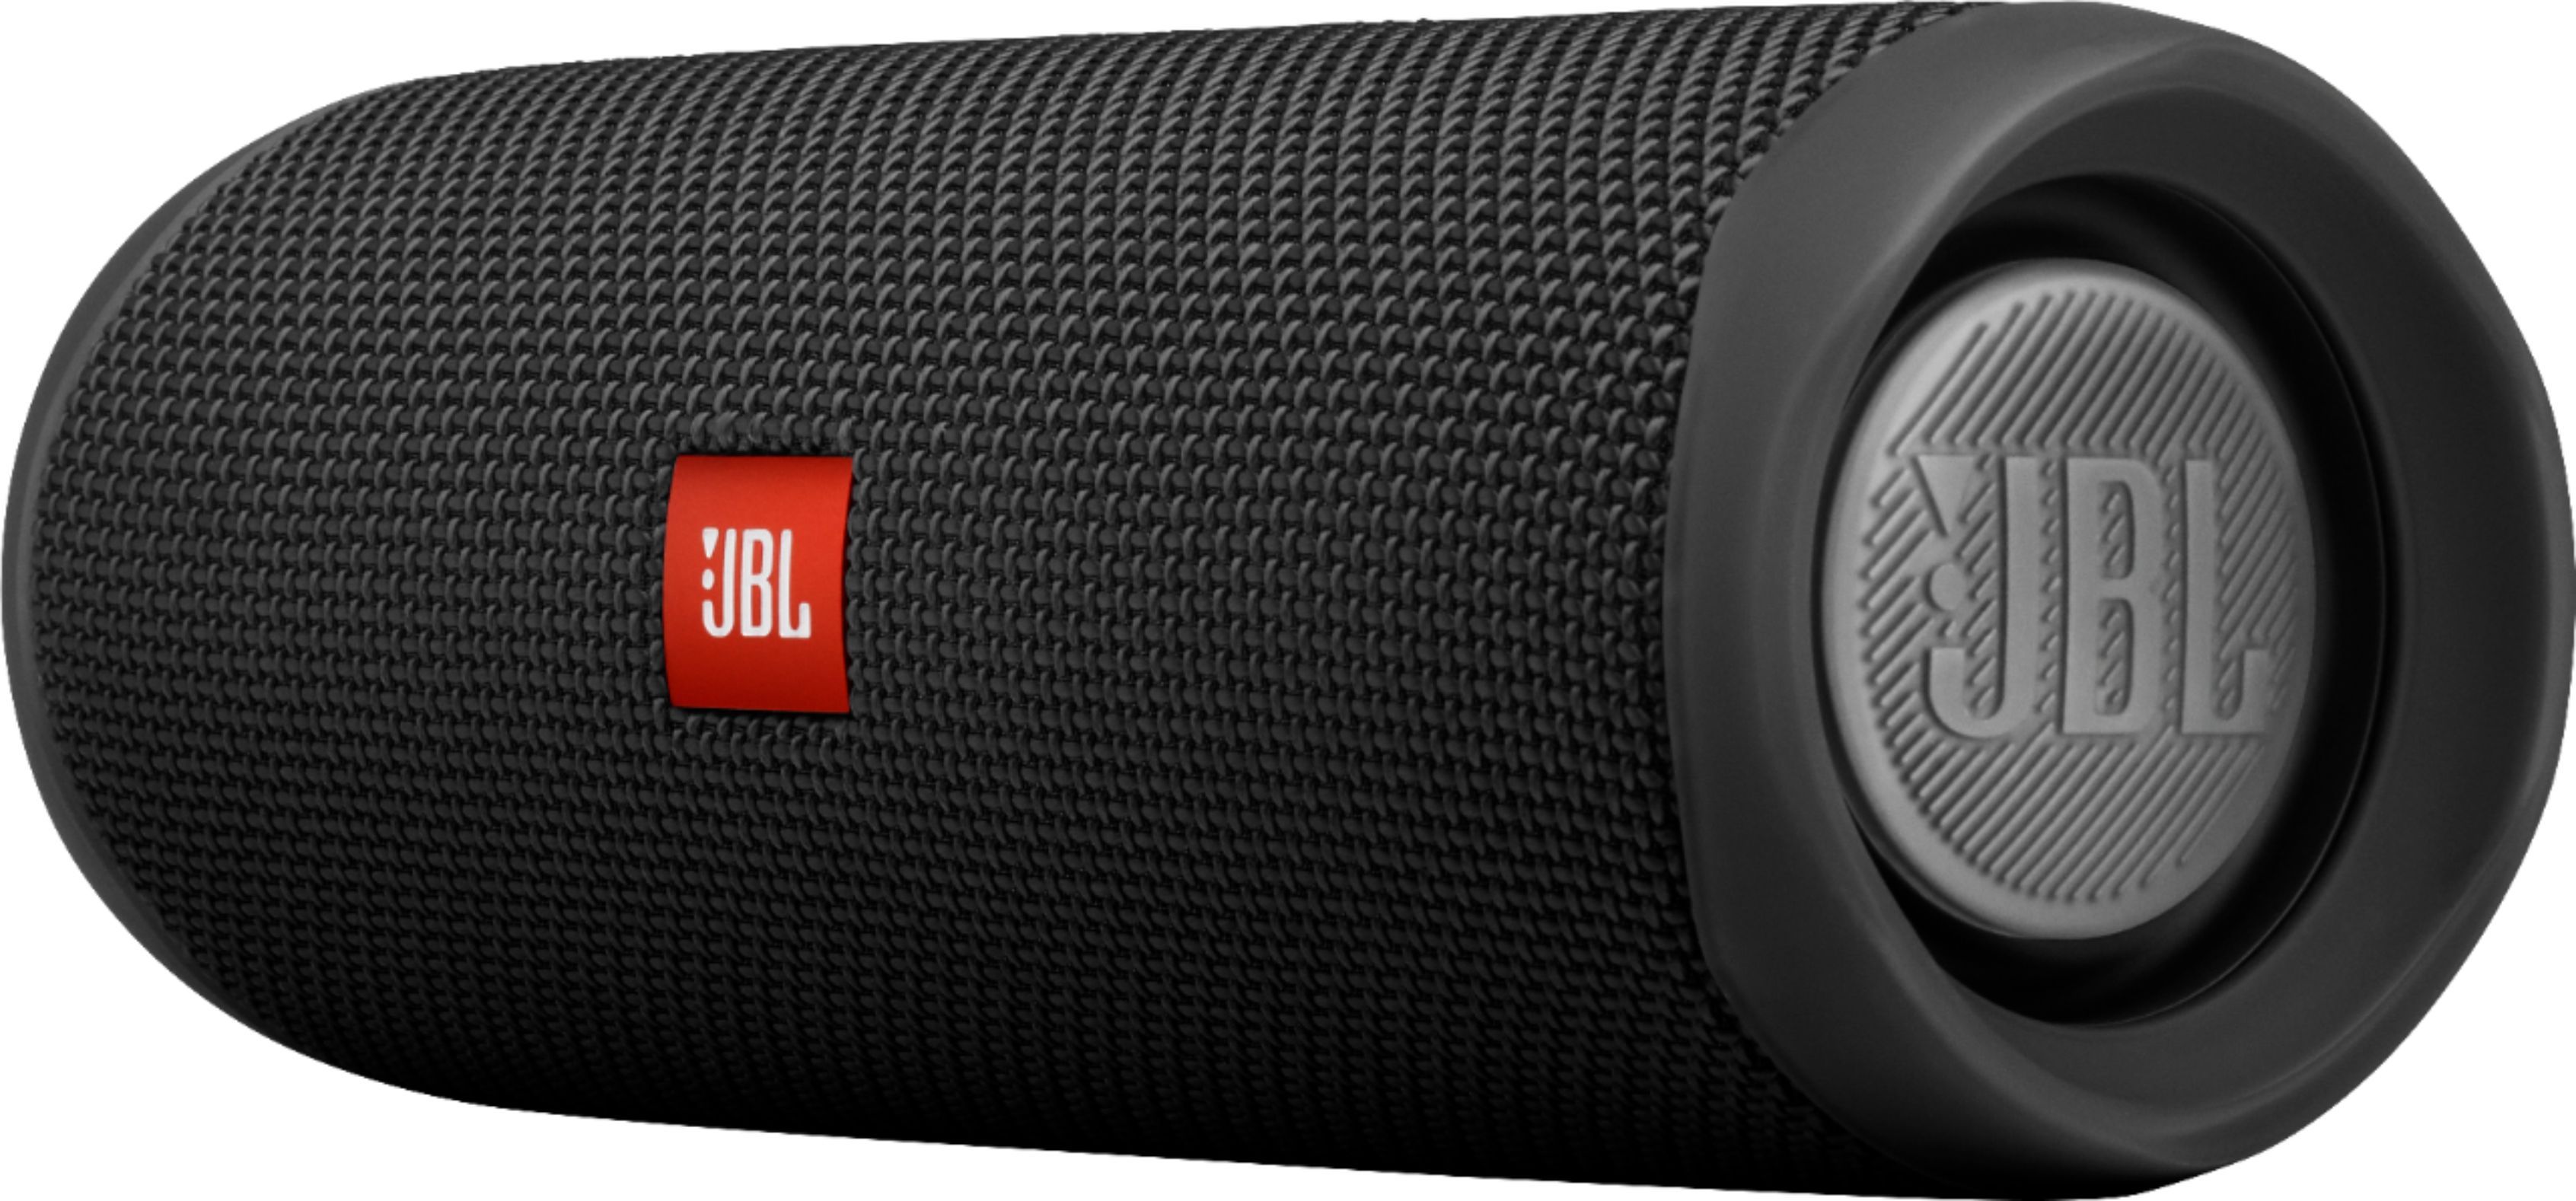 JBL Flip 5 Portable Bluetooth Speaker Black JBLFLIP5BLKAM - Best Buy | Best Buy U.S.